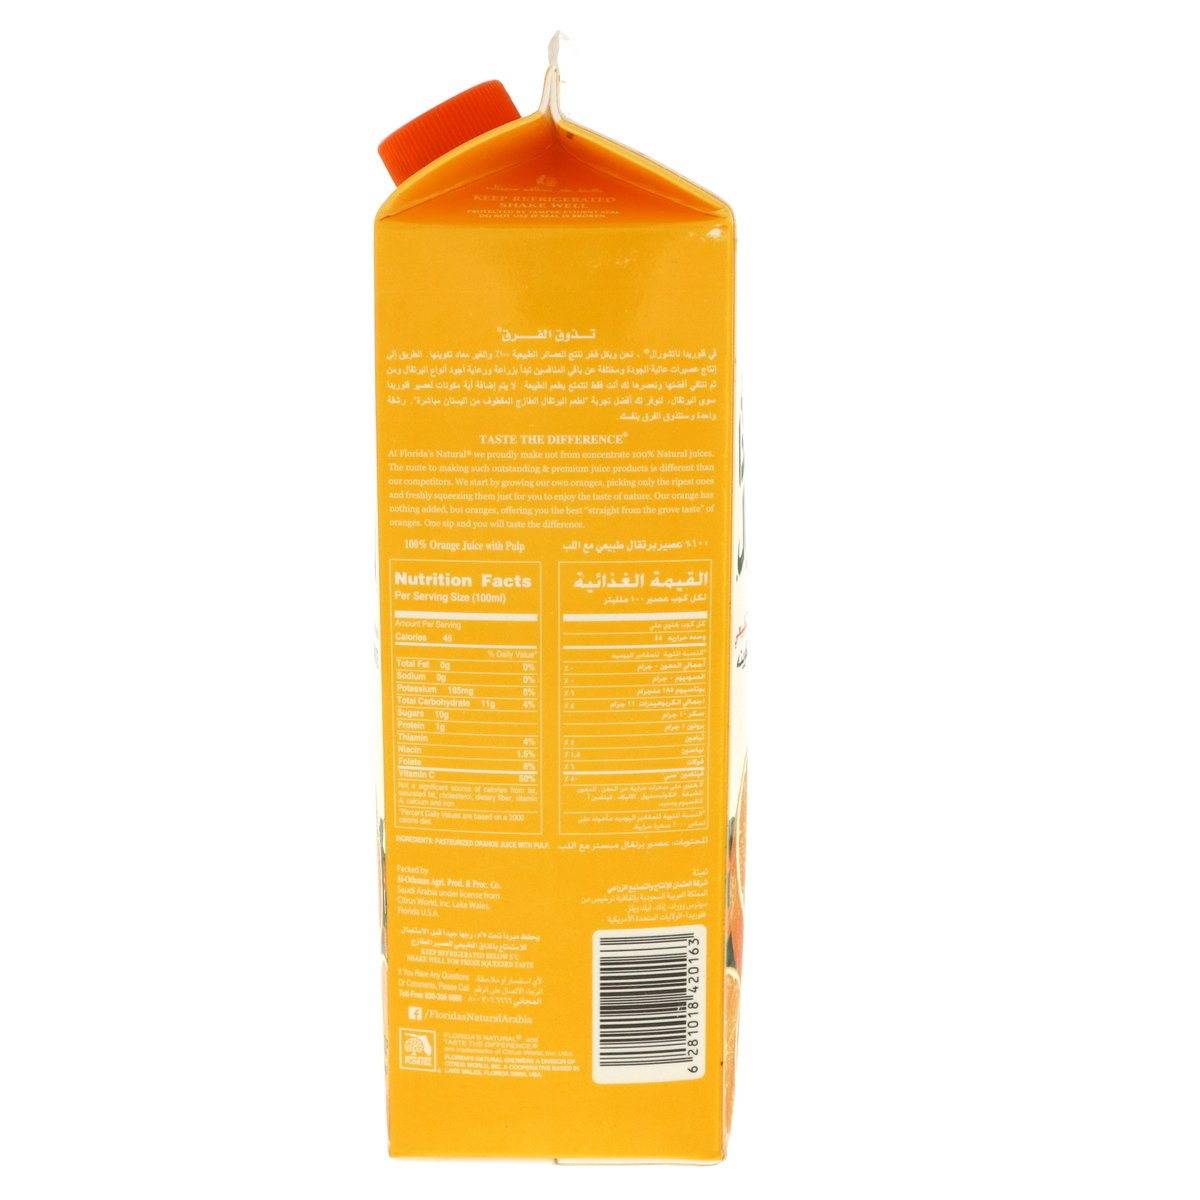 Florida's Natural Premium Orange Juice 900 ml